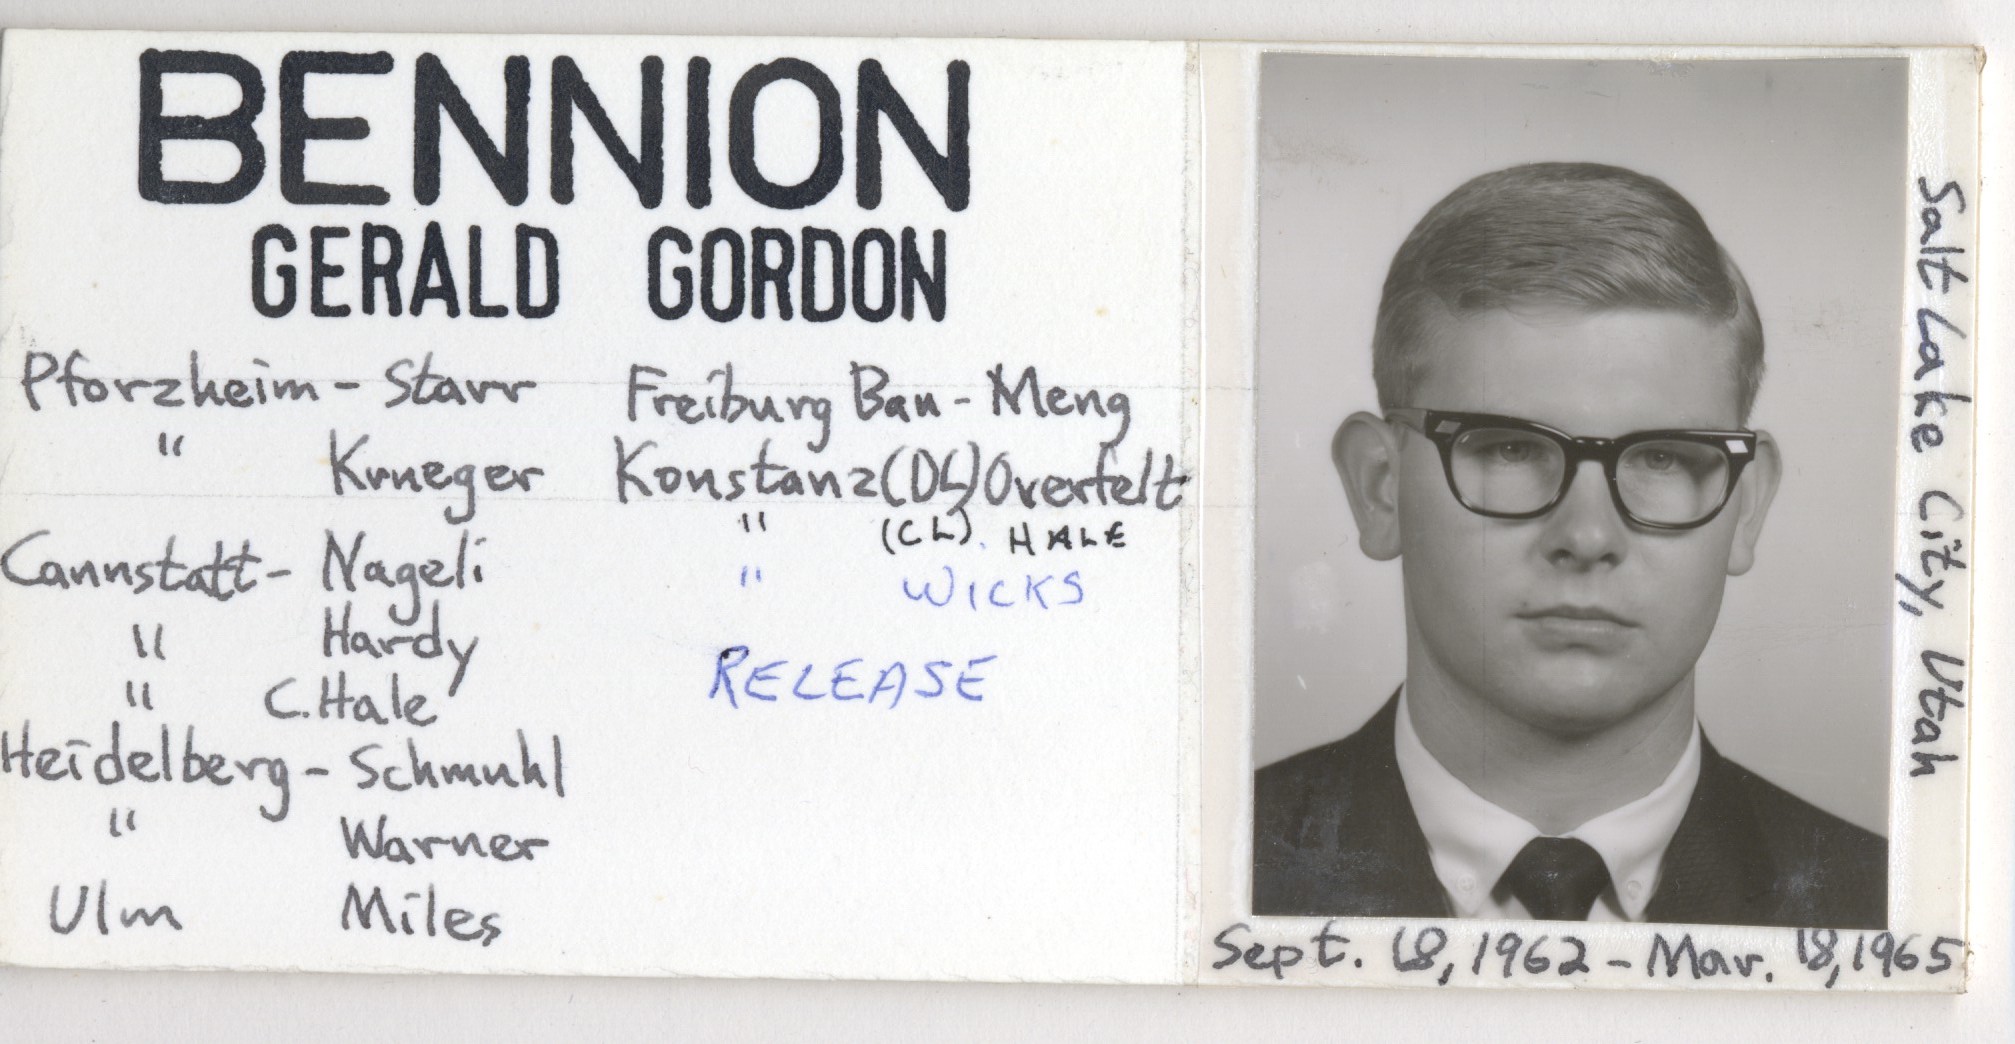 Bennion, Gerald Gordon